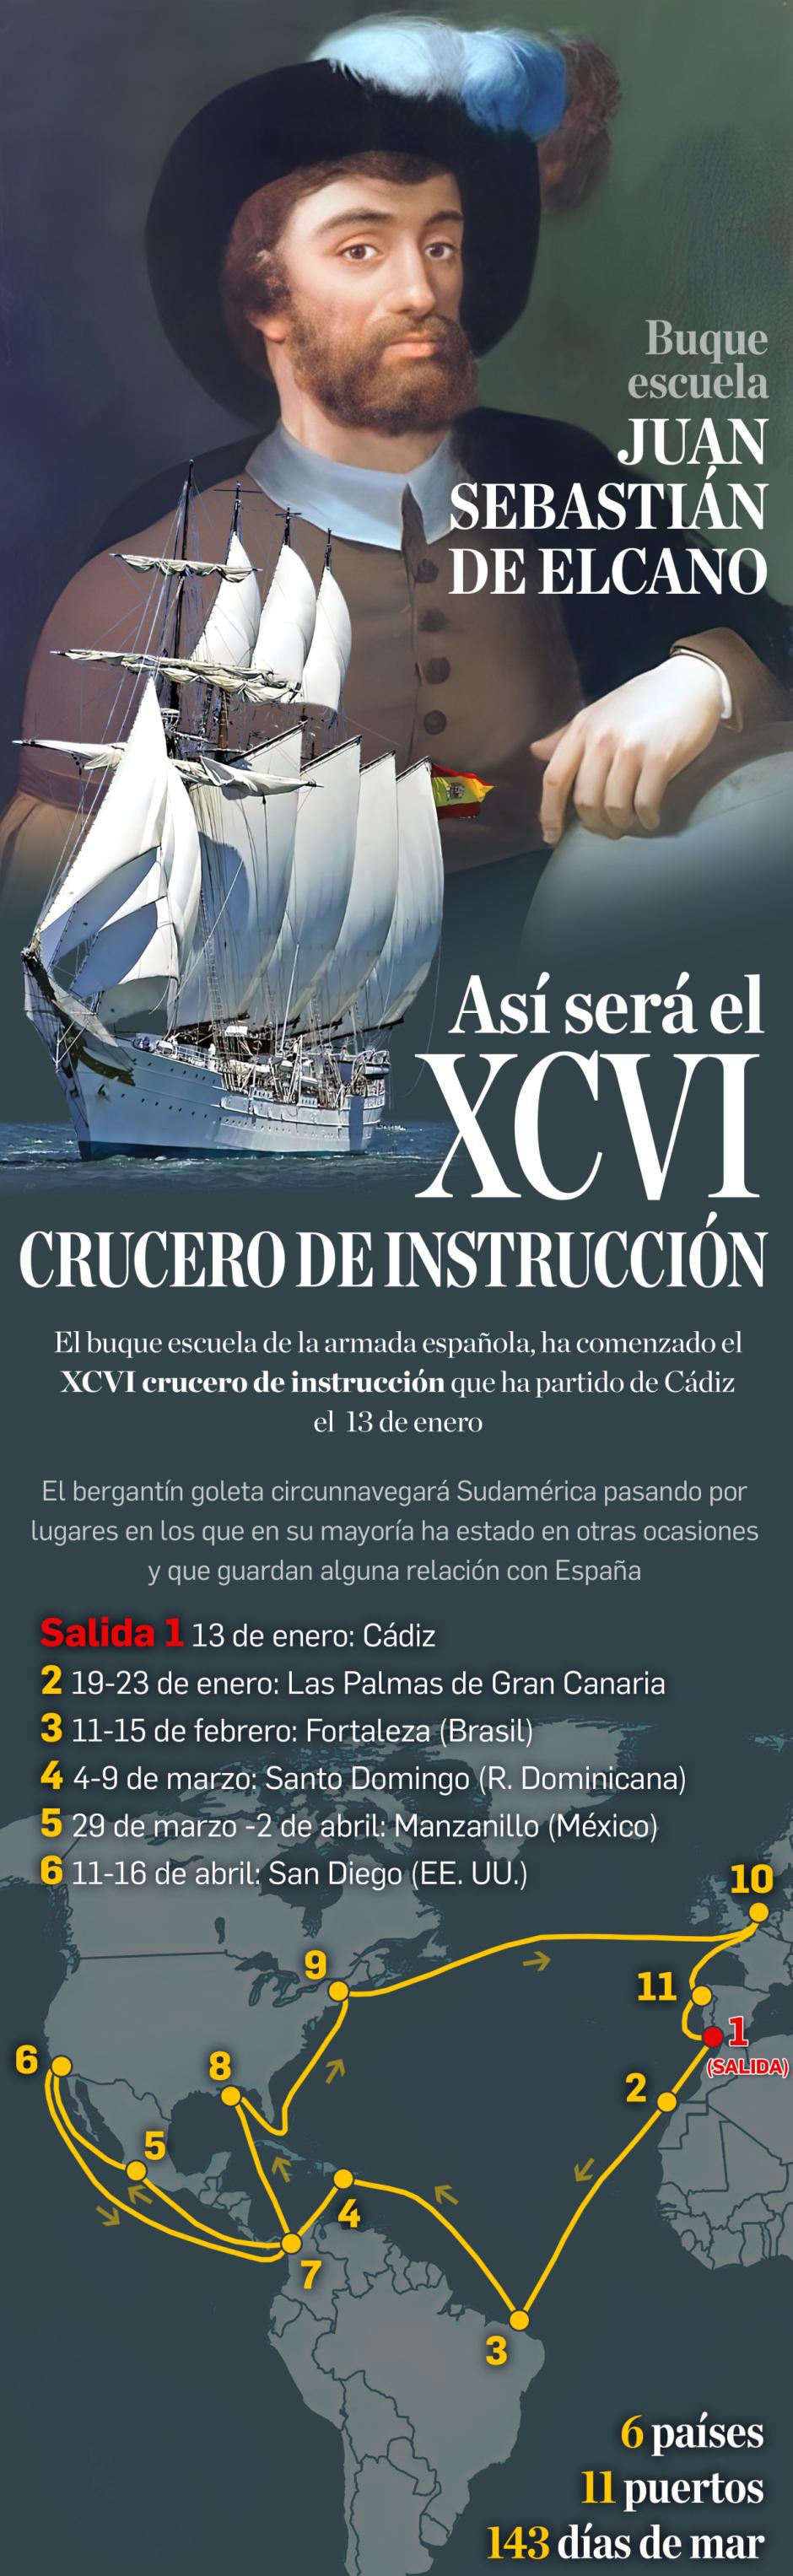 96 crucero de instrucción del Juan Sebastián de Elcano